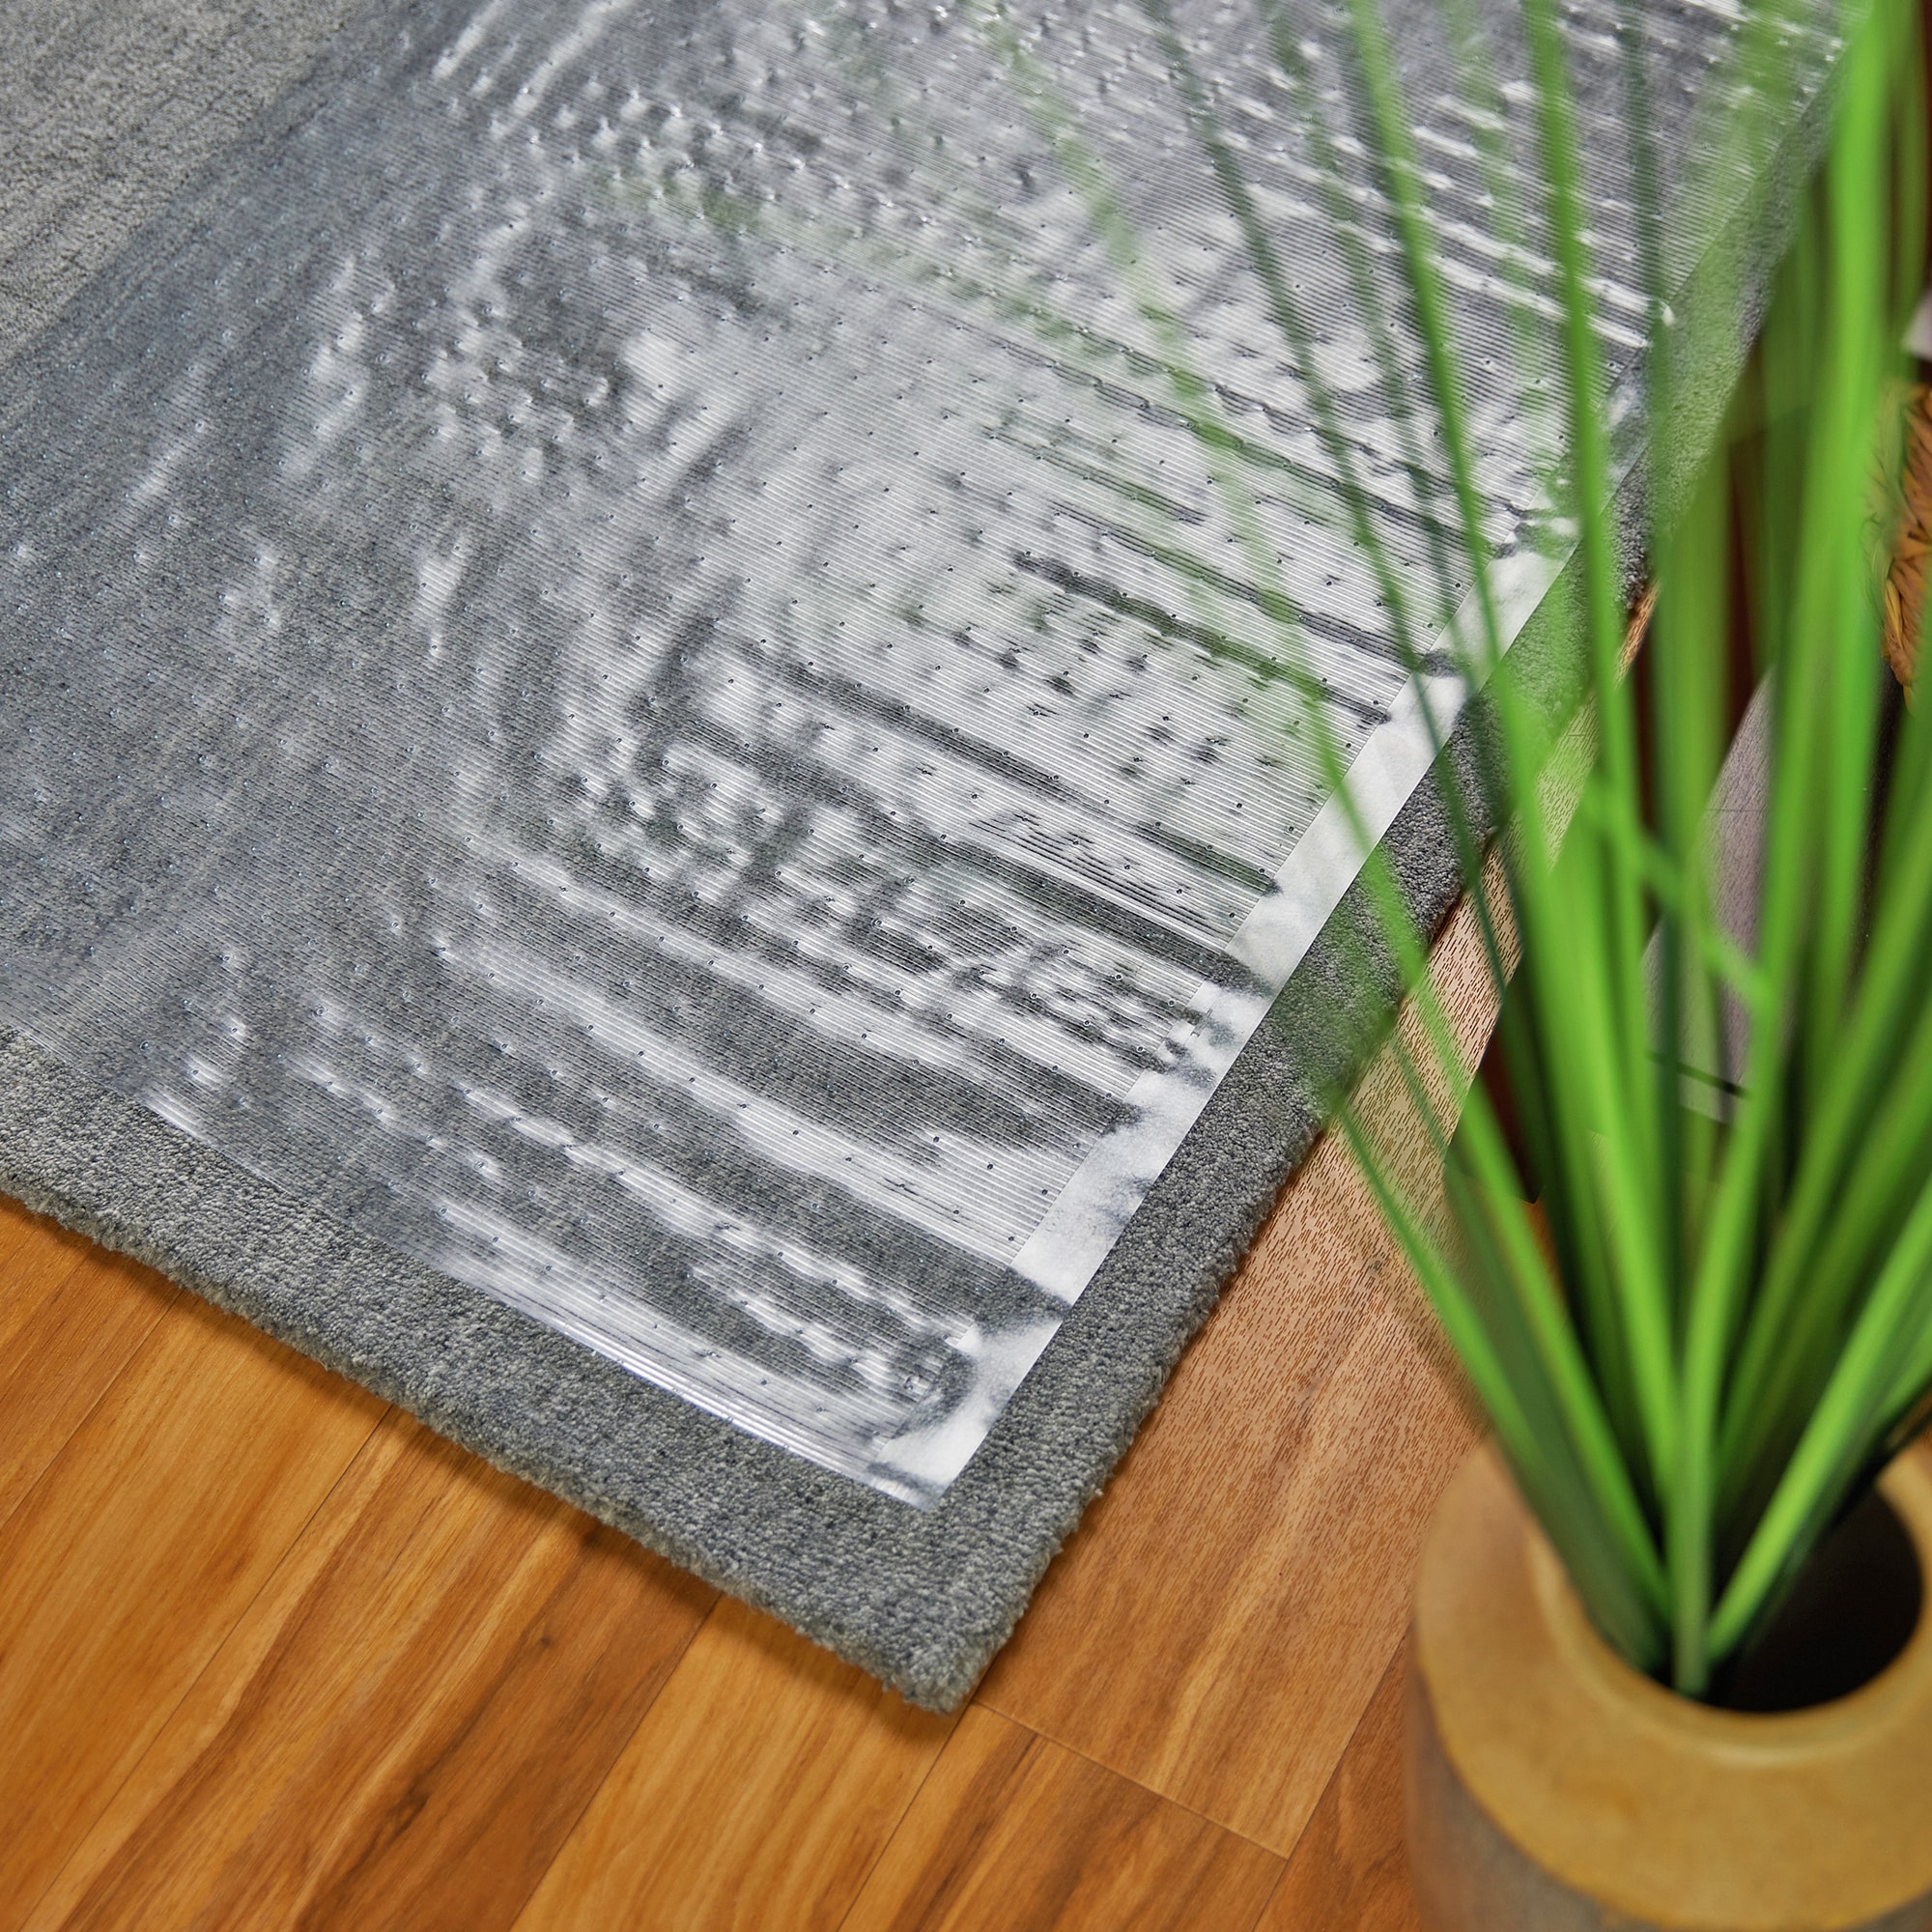 Clear Calder Vinyl Carpet Protector 68cm Width Roll Mat Guard Home Office Sheet 